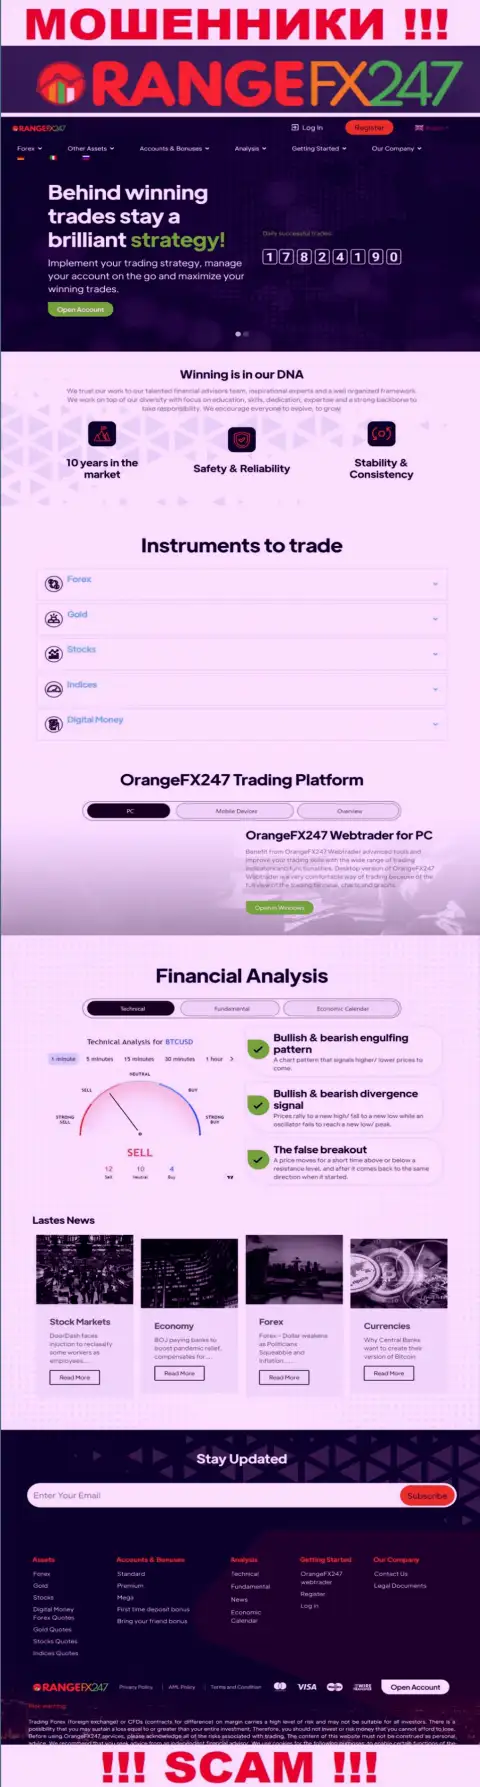 Главная страничка официального информационного сервиса мошенников OrangeFX 247